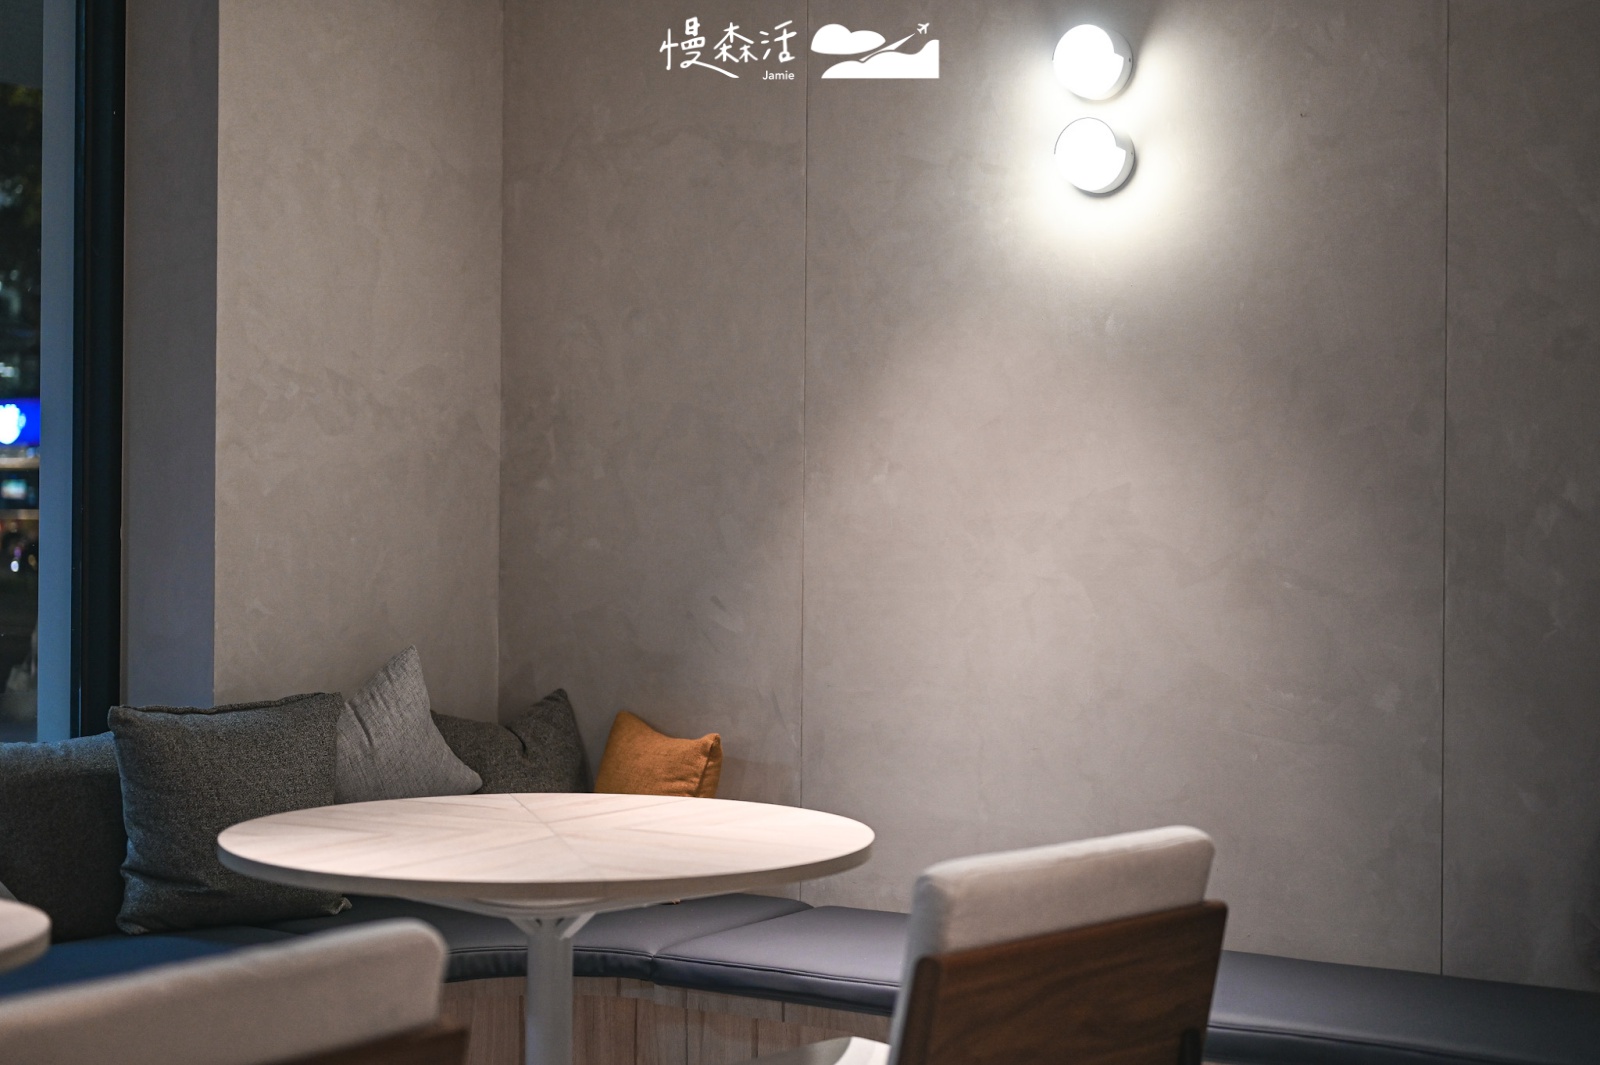 台北中山區 全家「Let’s Café PLUS」咖啡廳 室內空間